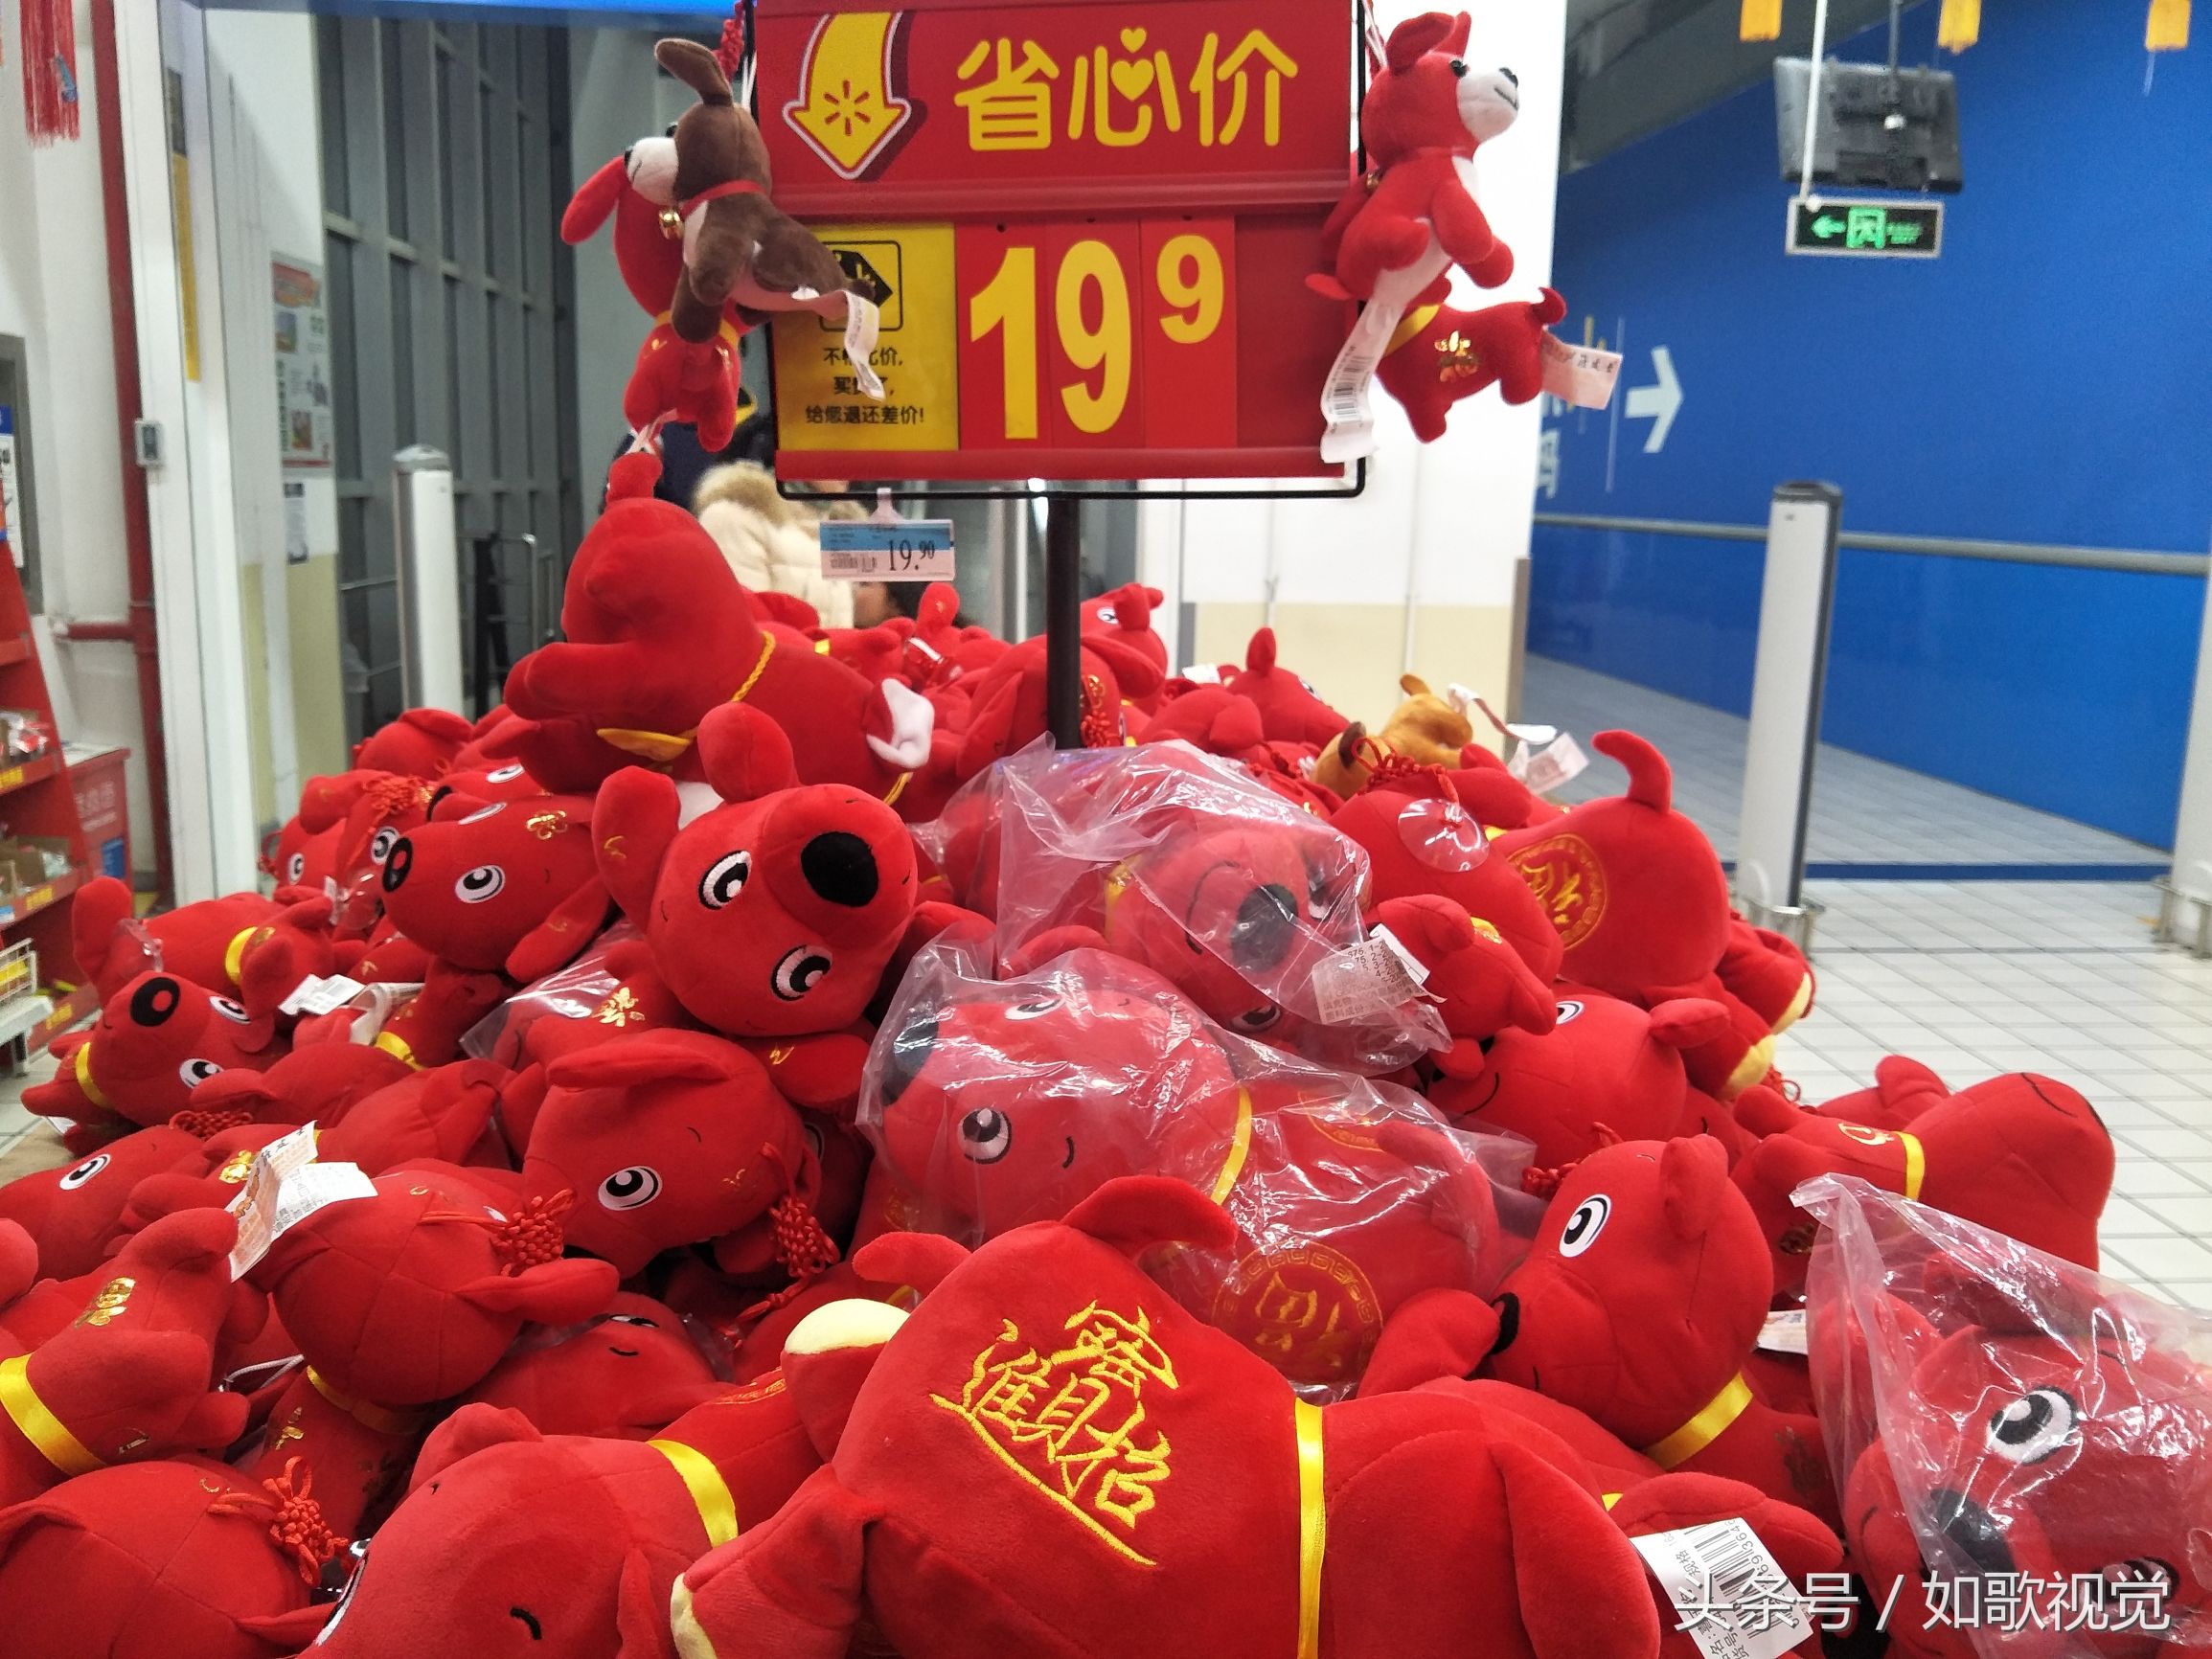 江苏省南京:春节临近,一家大型超市卖起了这些春节元素